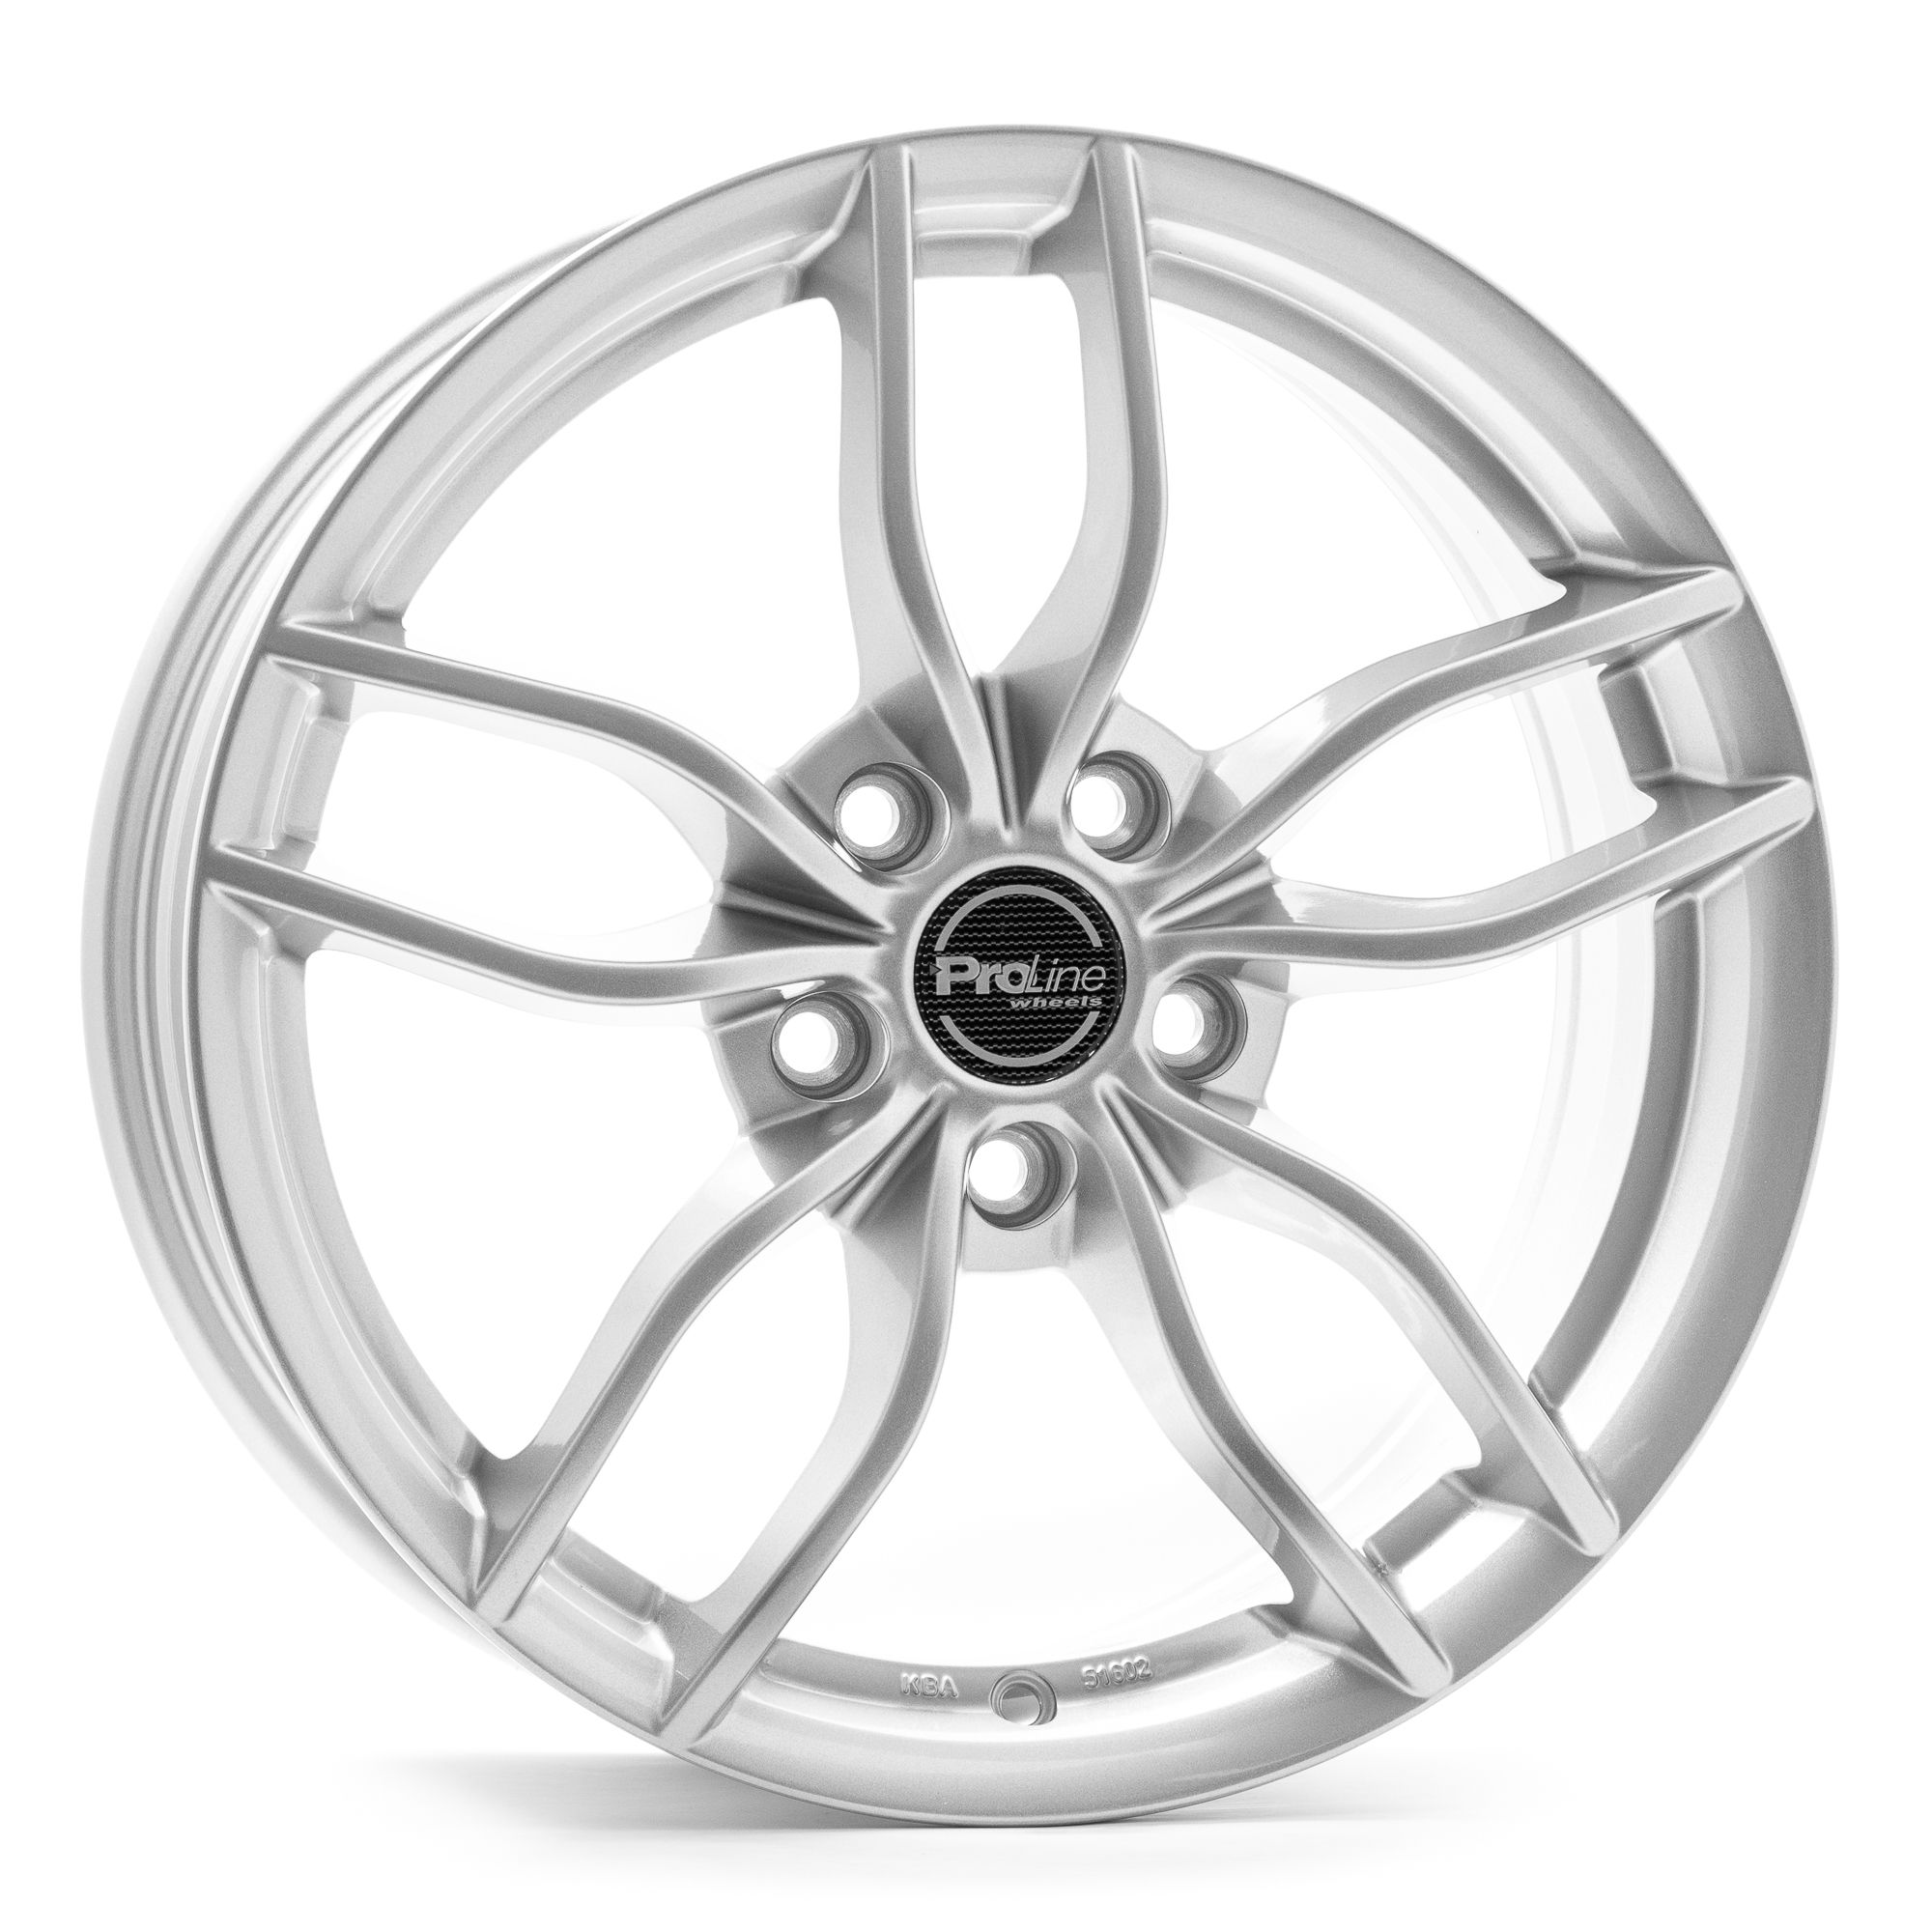 Proline Wheels-Tec GmbH ZX100 arctic silver